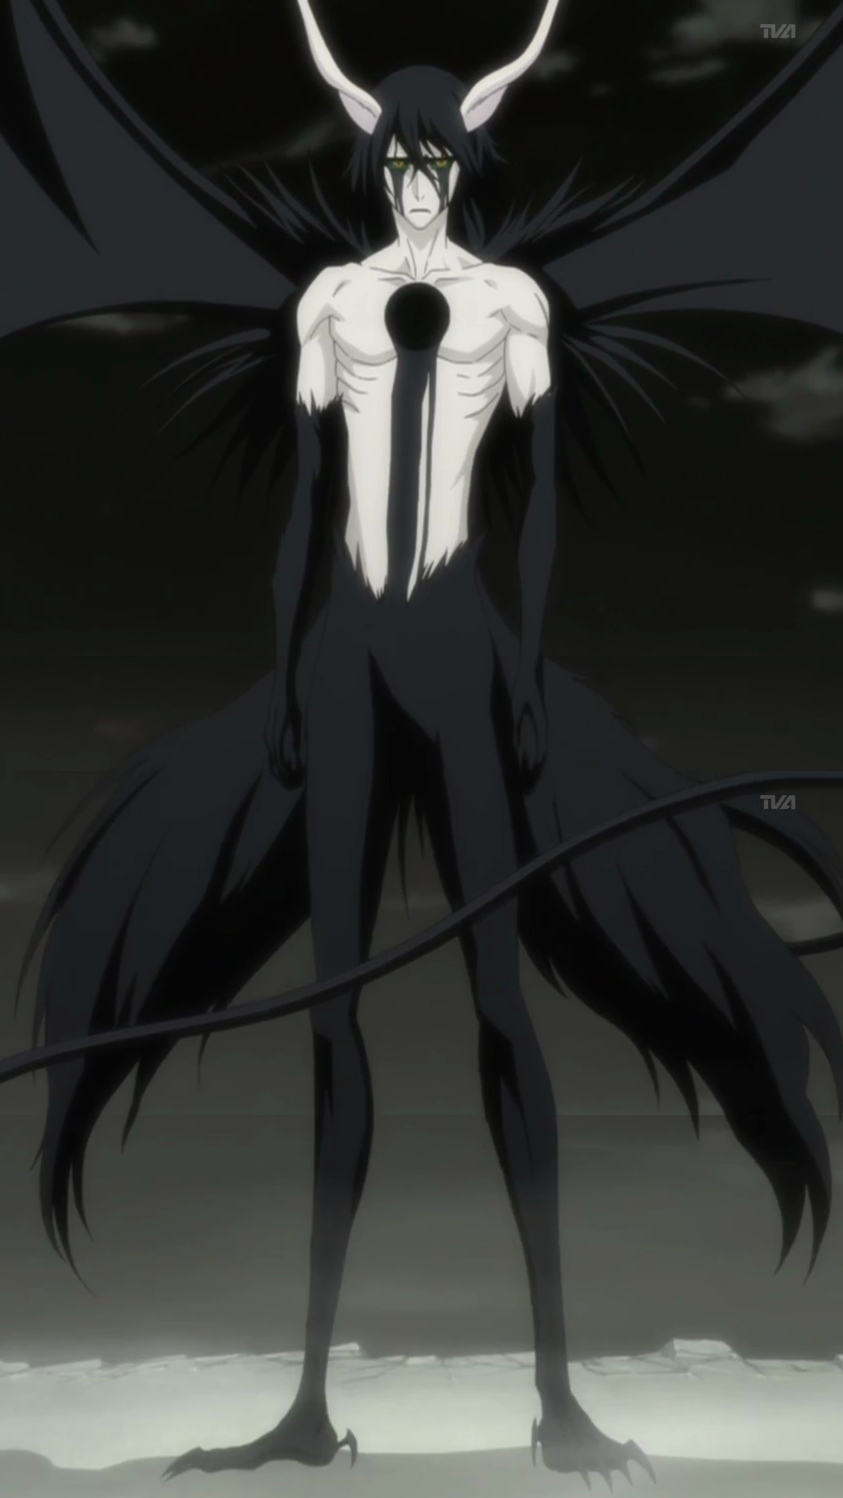 Vasto Lorde Ichigo Mask by That-Black-Cat on DeviantArt